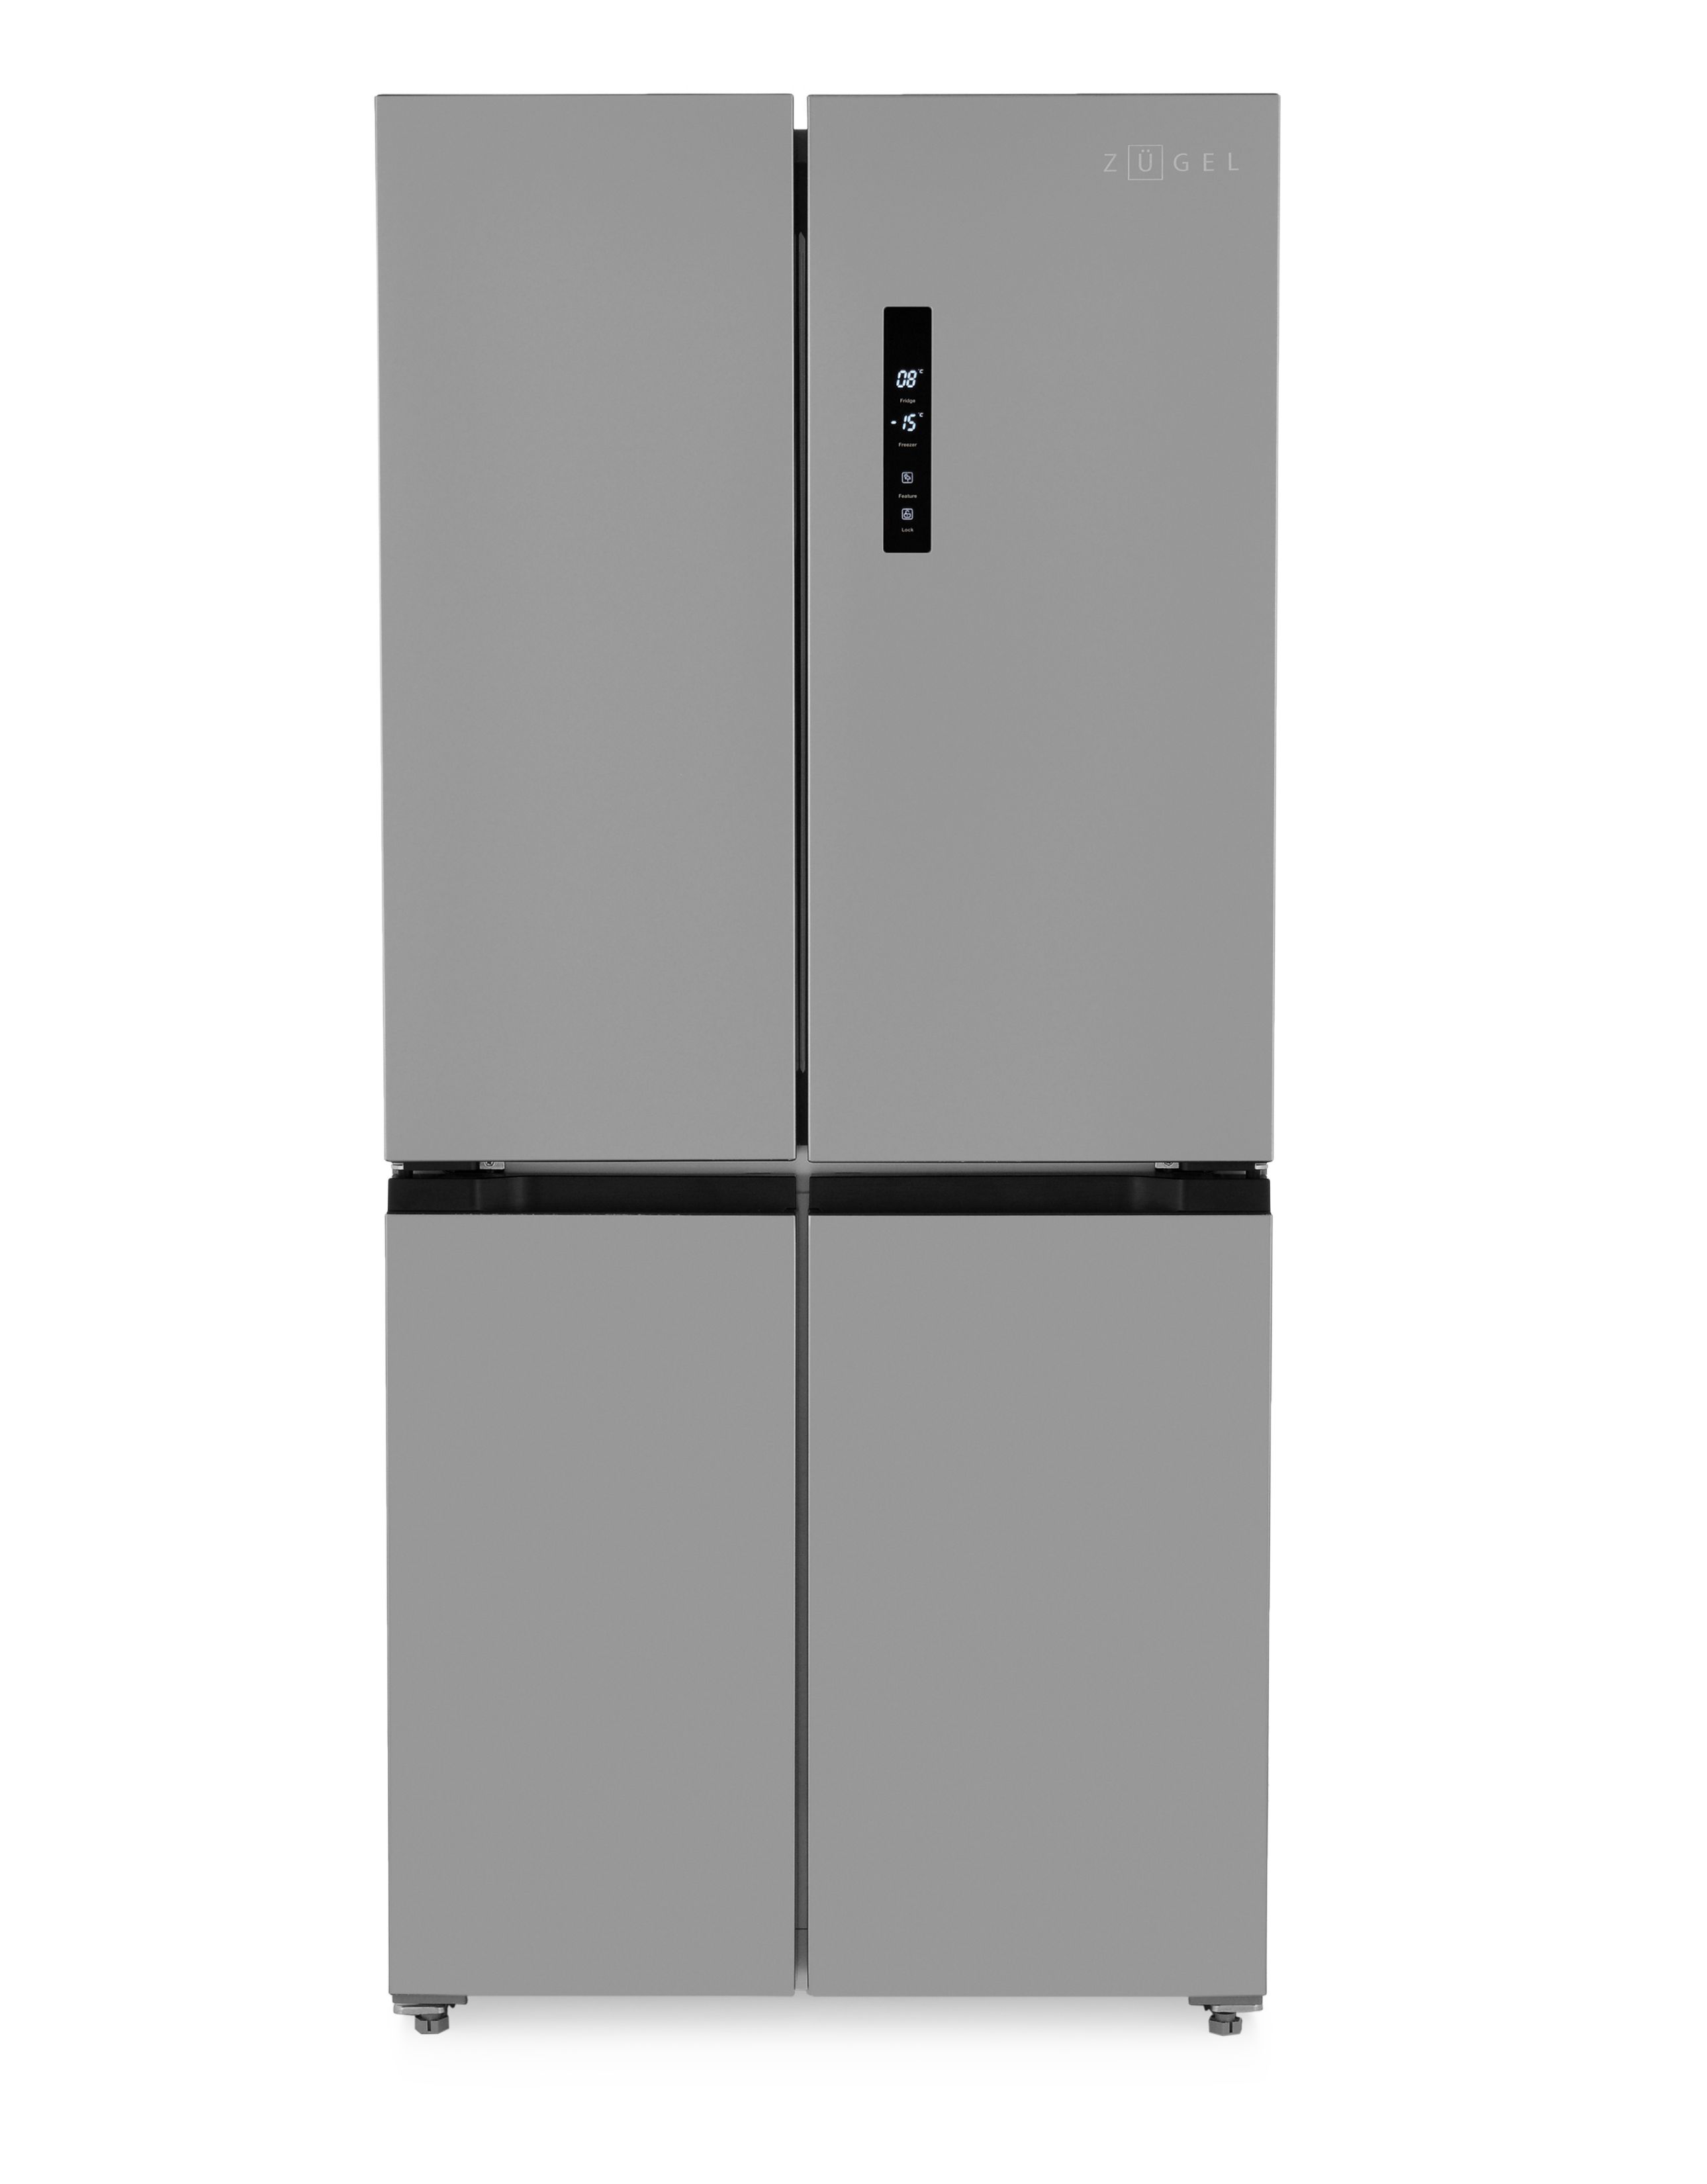 ZUGELХолодильникZRCD430,серыйметаллик